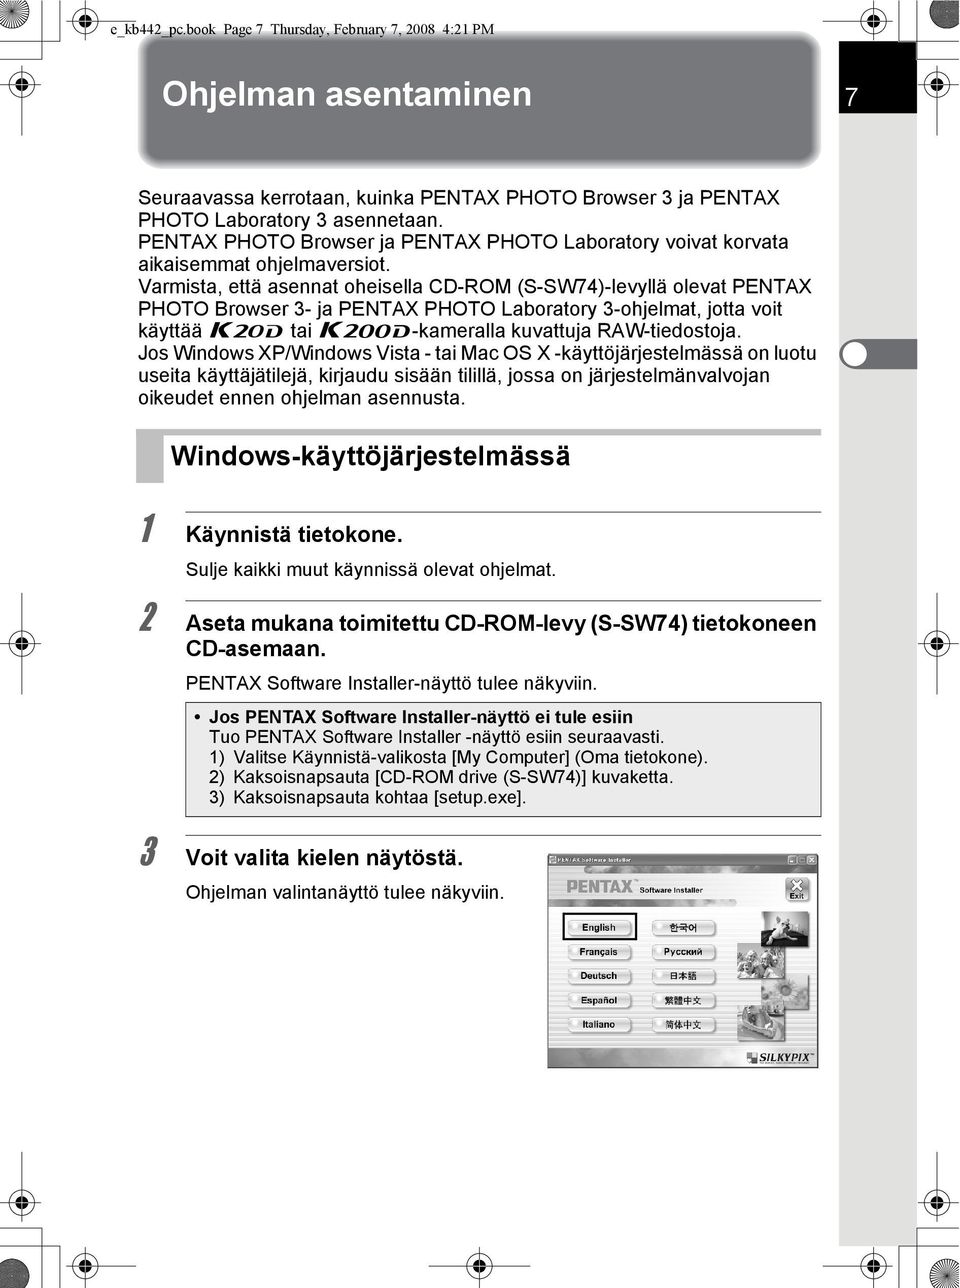 Varmista, että asennat oheisella CD-ROM (S-SW74)-levyllä olevat PENTAX PHOTO Browser 3- ja PENTAX PHOTO Laboratory 3-ohjelmat, jotta voit käyttää u tai x-kameralla kuvattuja RAW-tiedostoja.